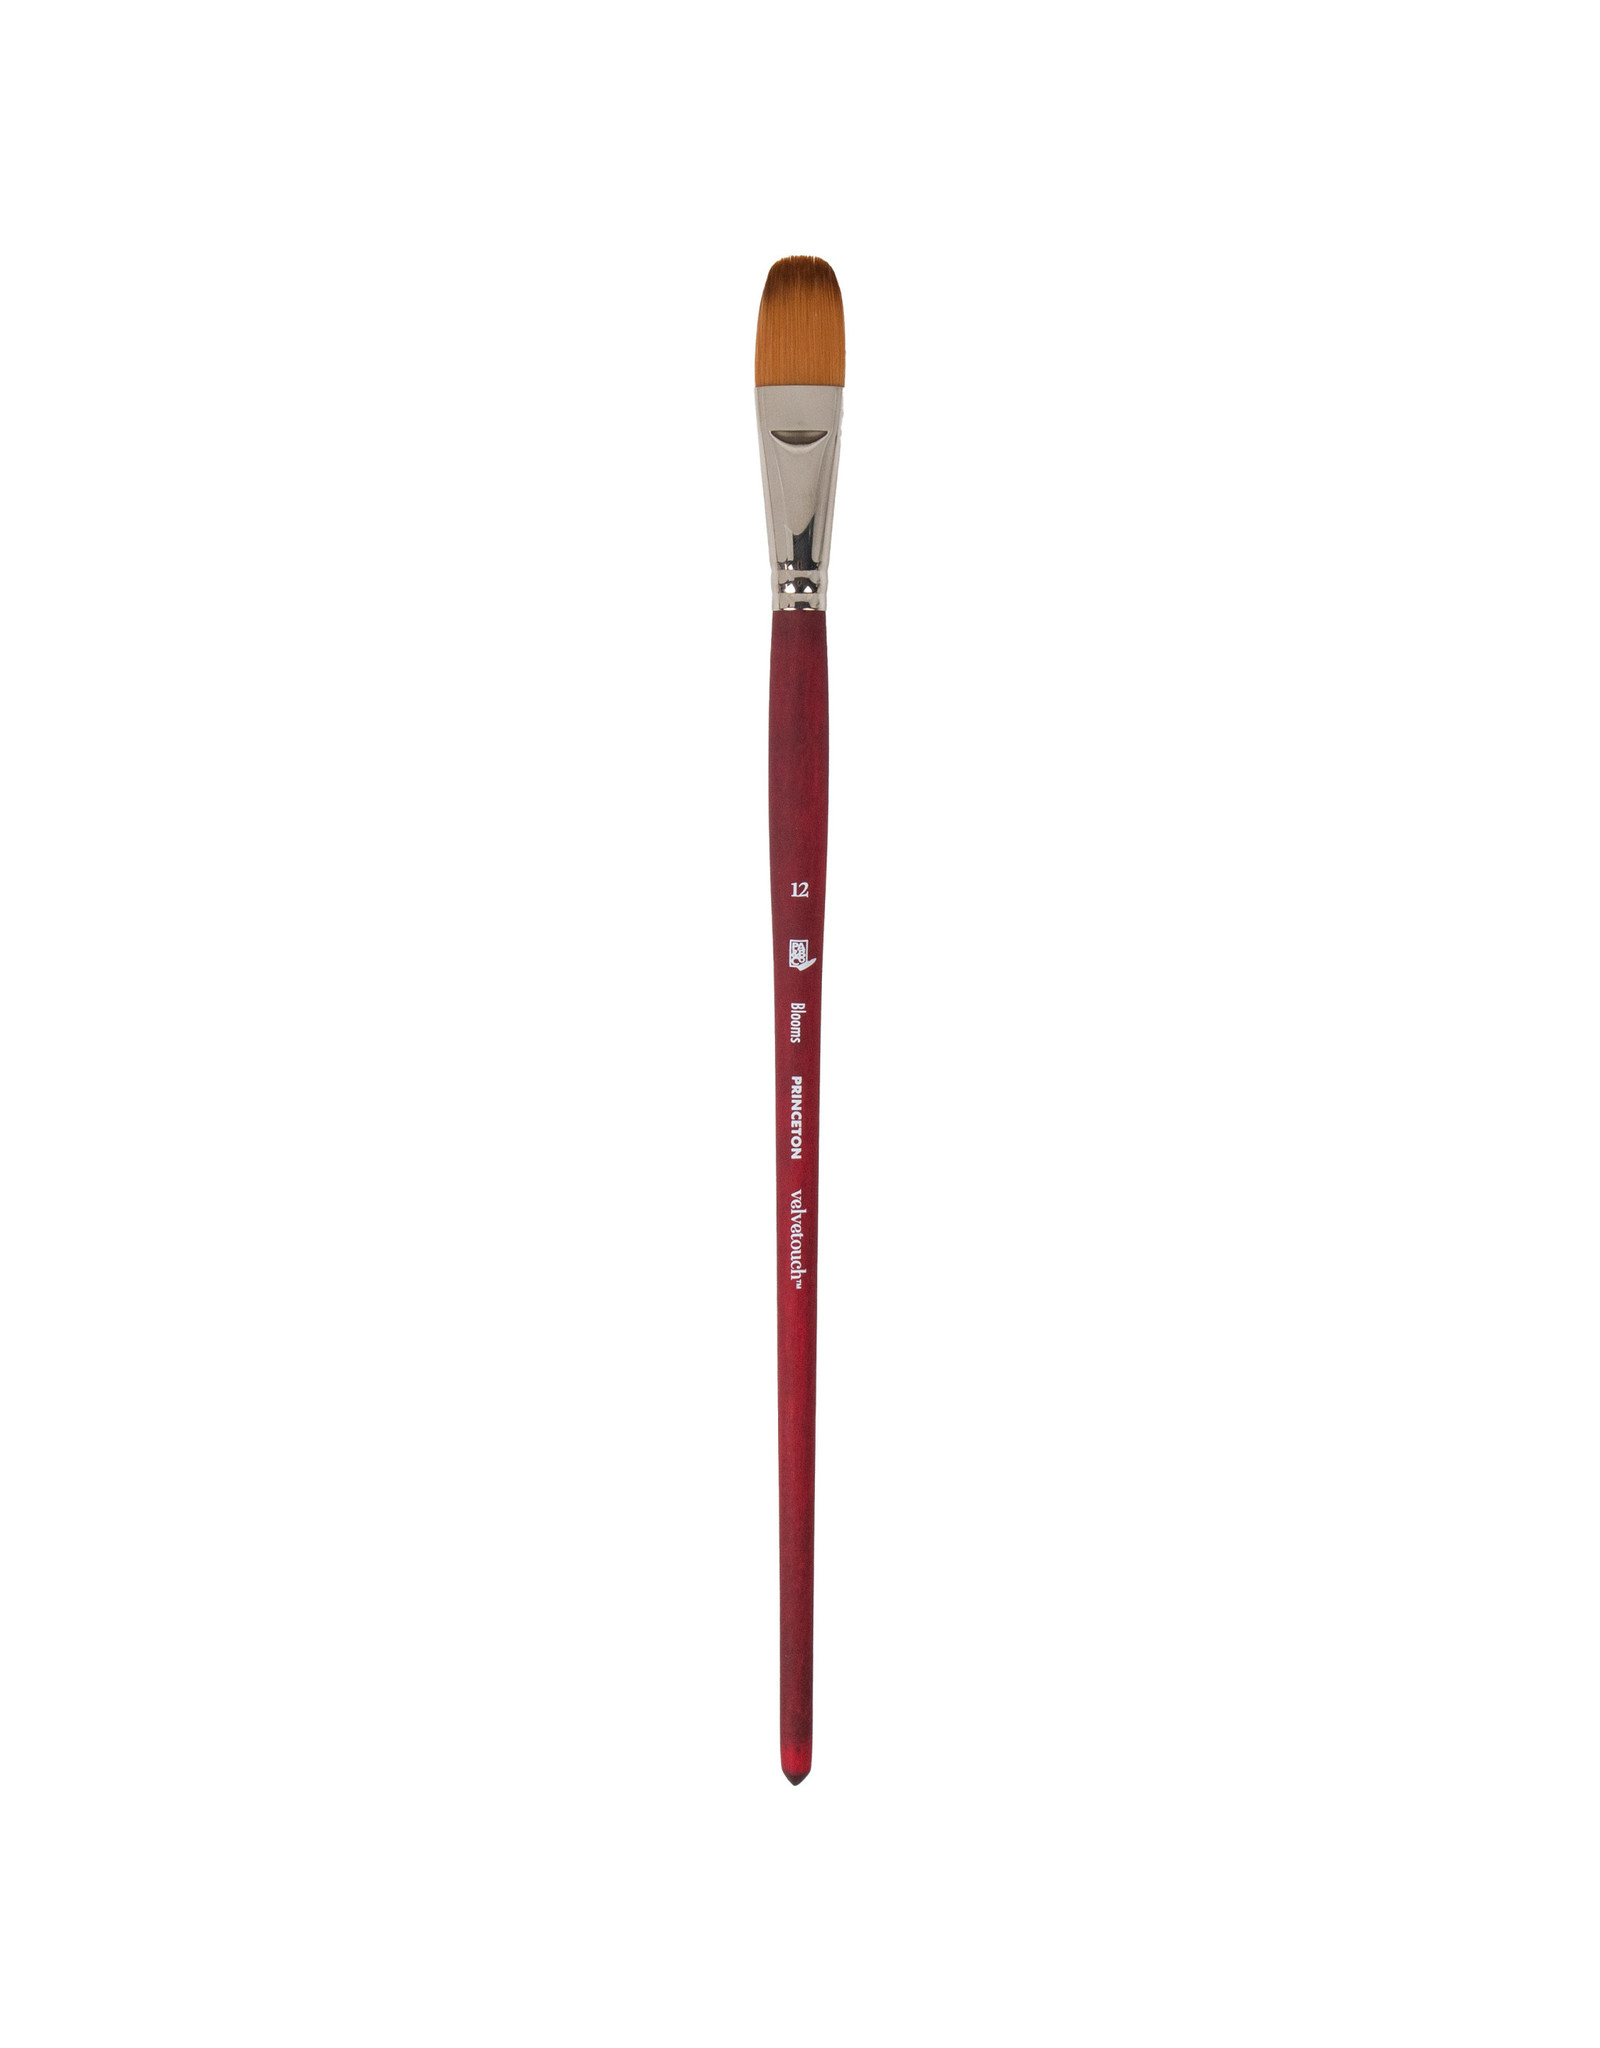 Product spotlight: Princeton Velvetouch brushes! - The Art Store